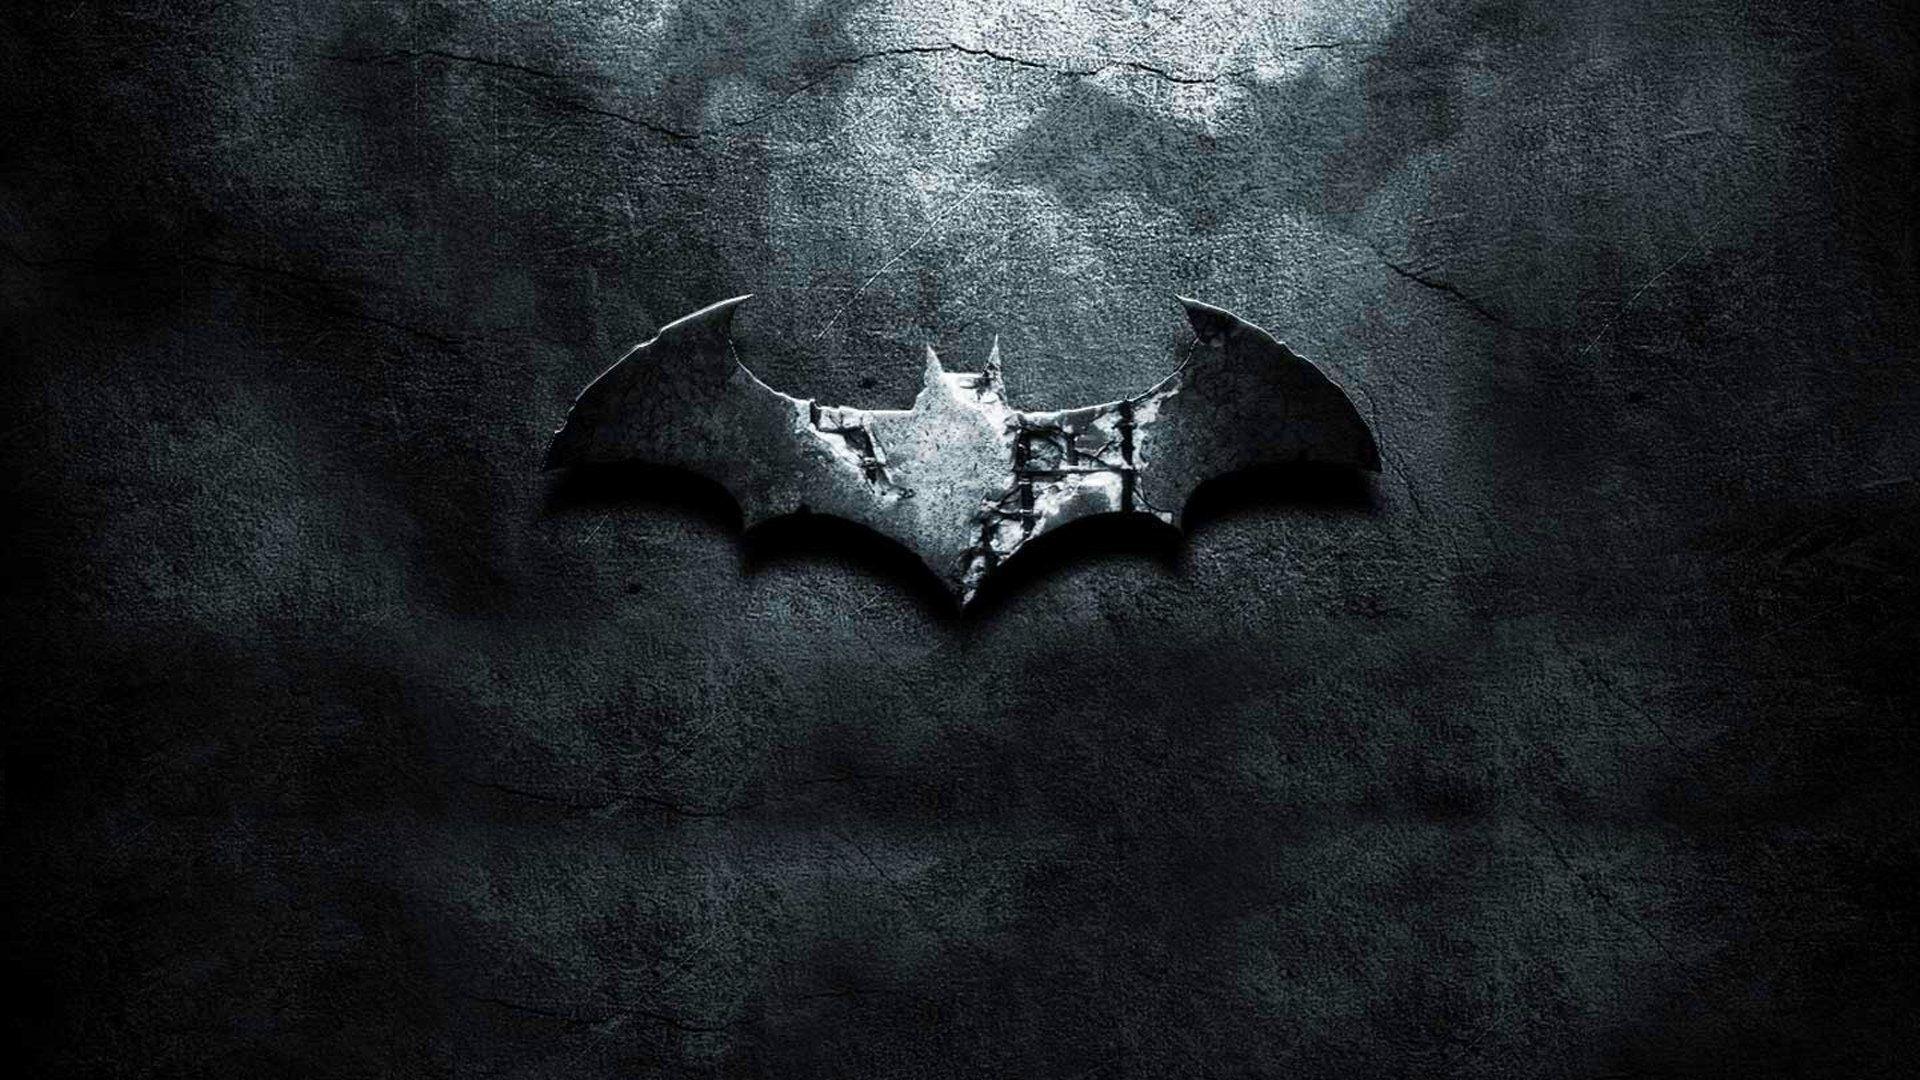 Batman Symbol Wallpaper